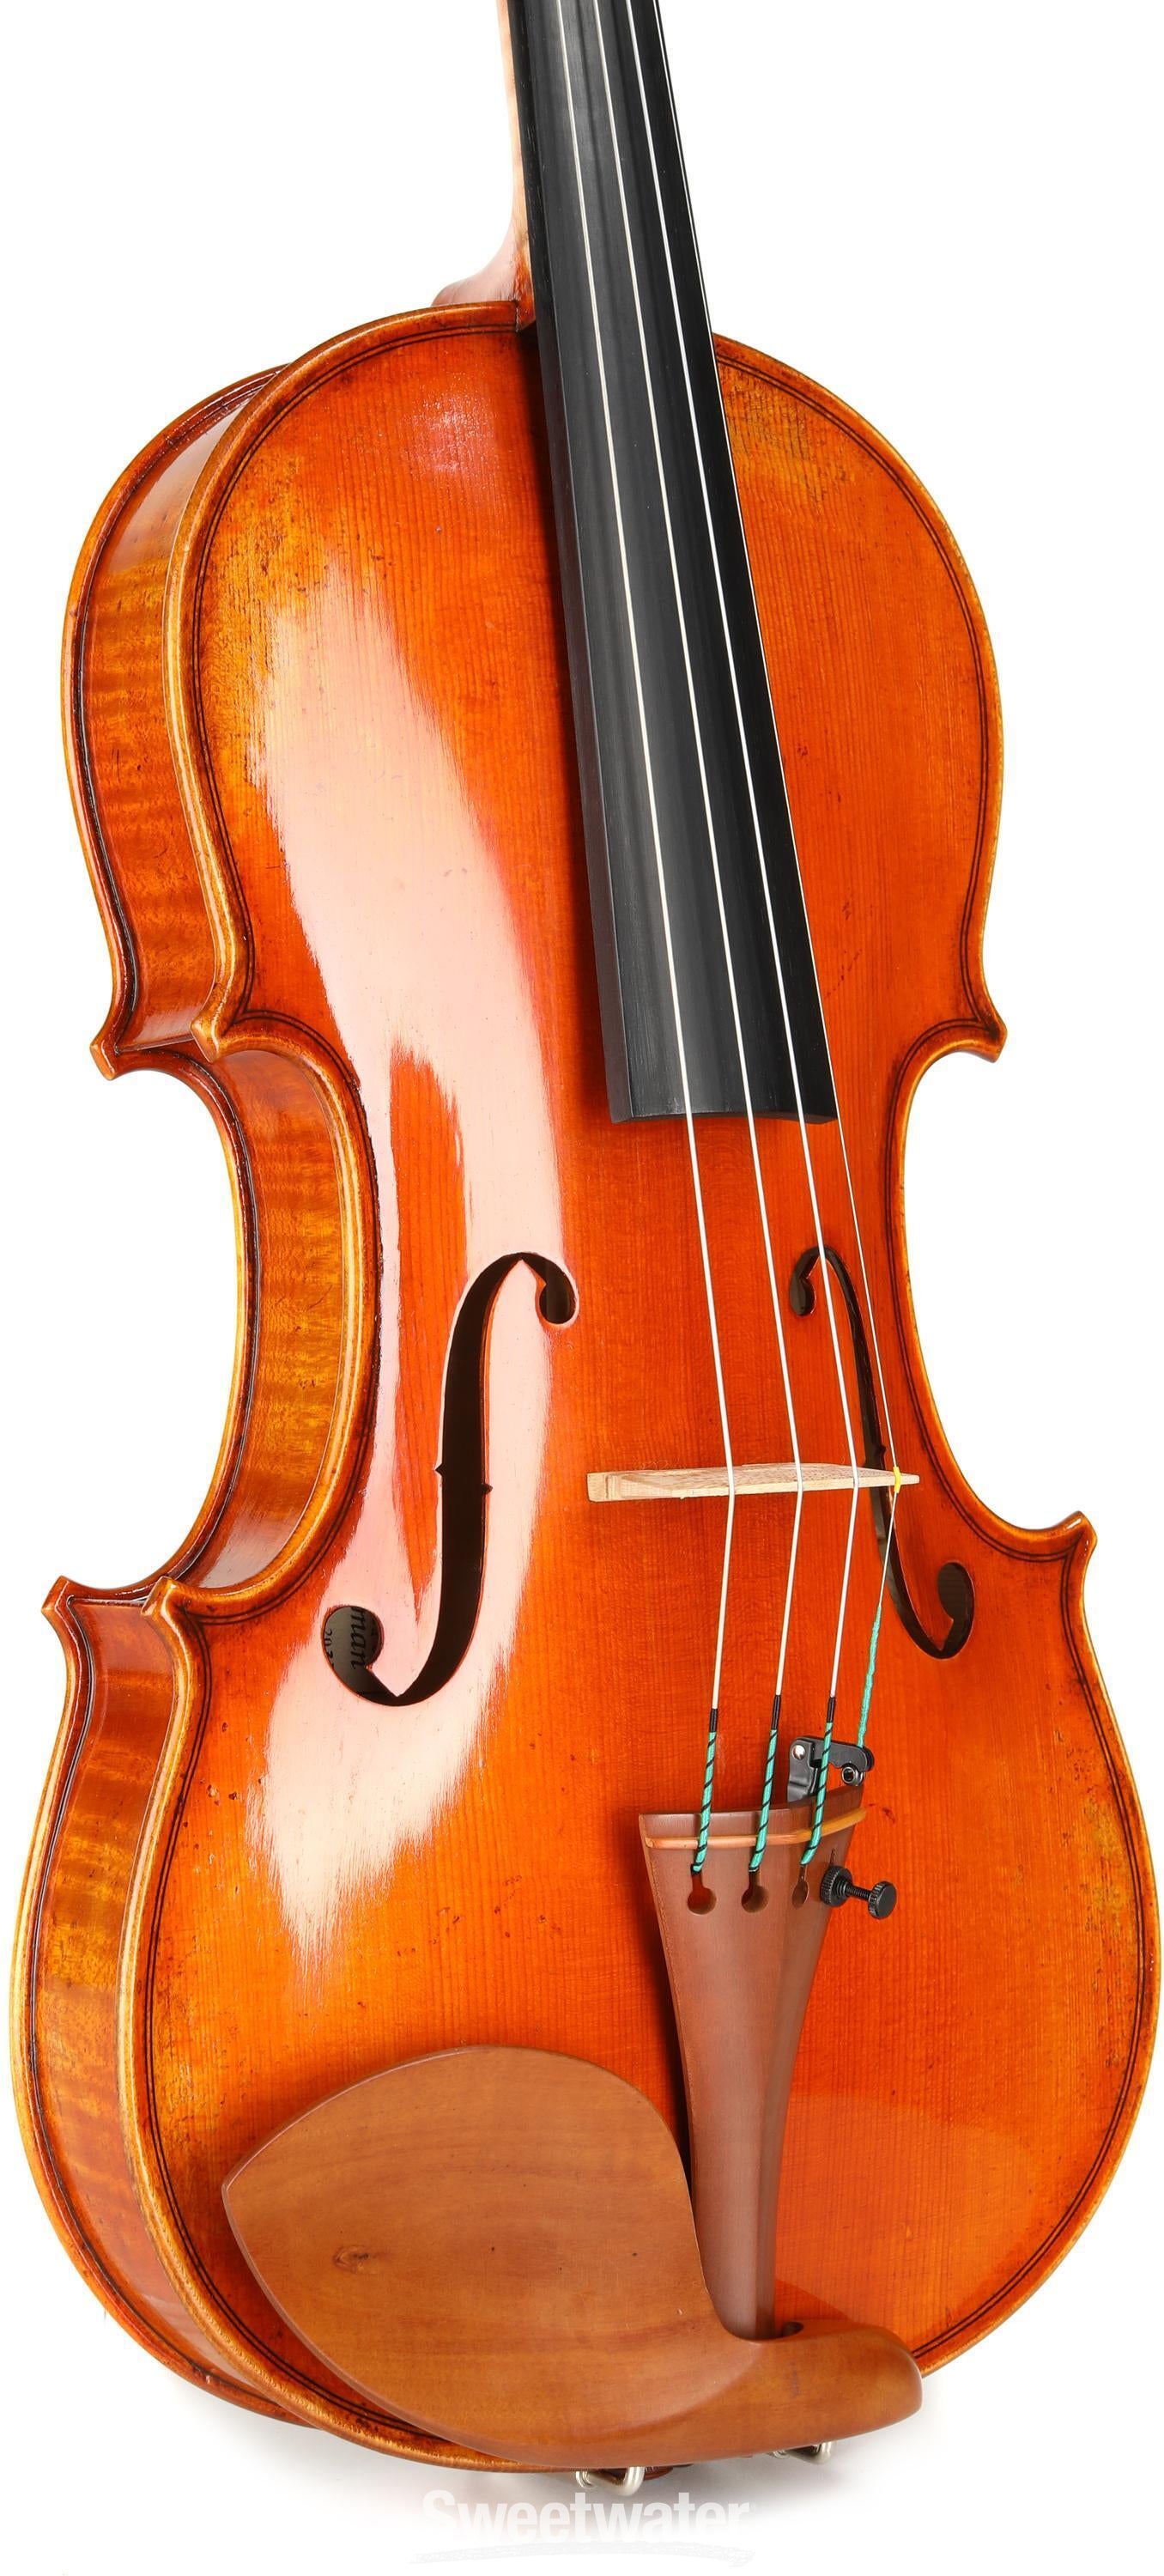 Eastman Master VL906 Professional Violin - 4/4 Size